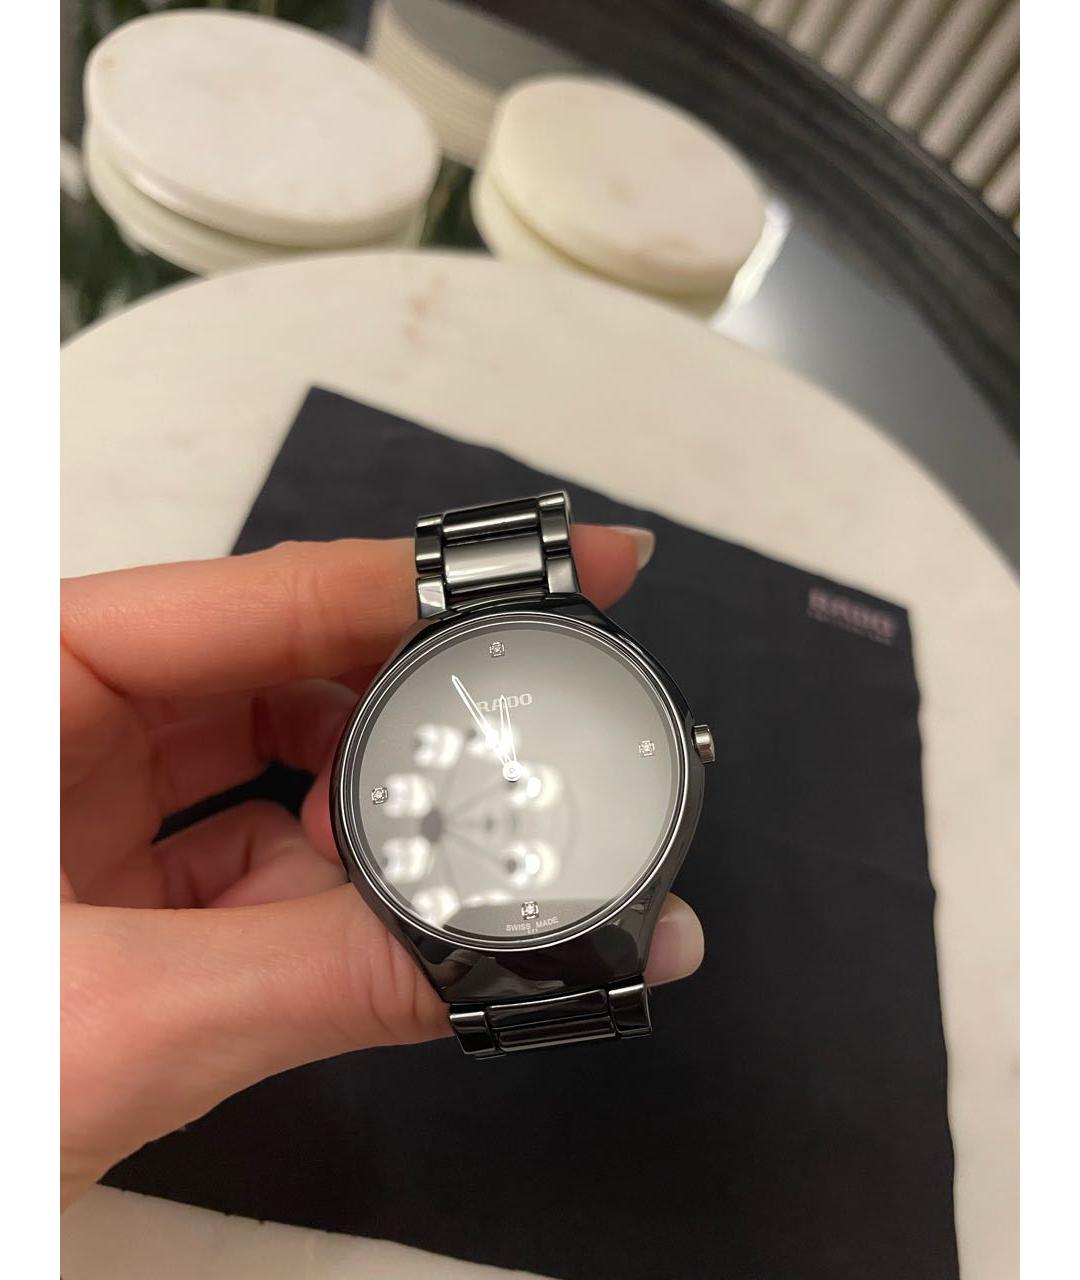 RADO Черные керамические часы, фото 2